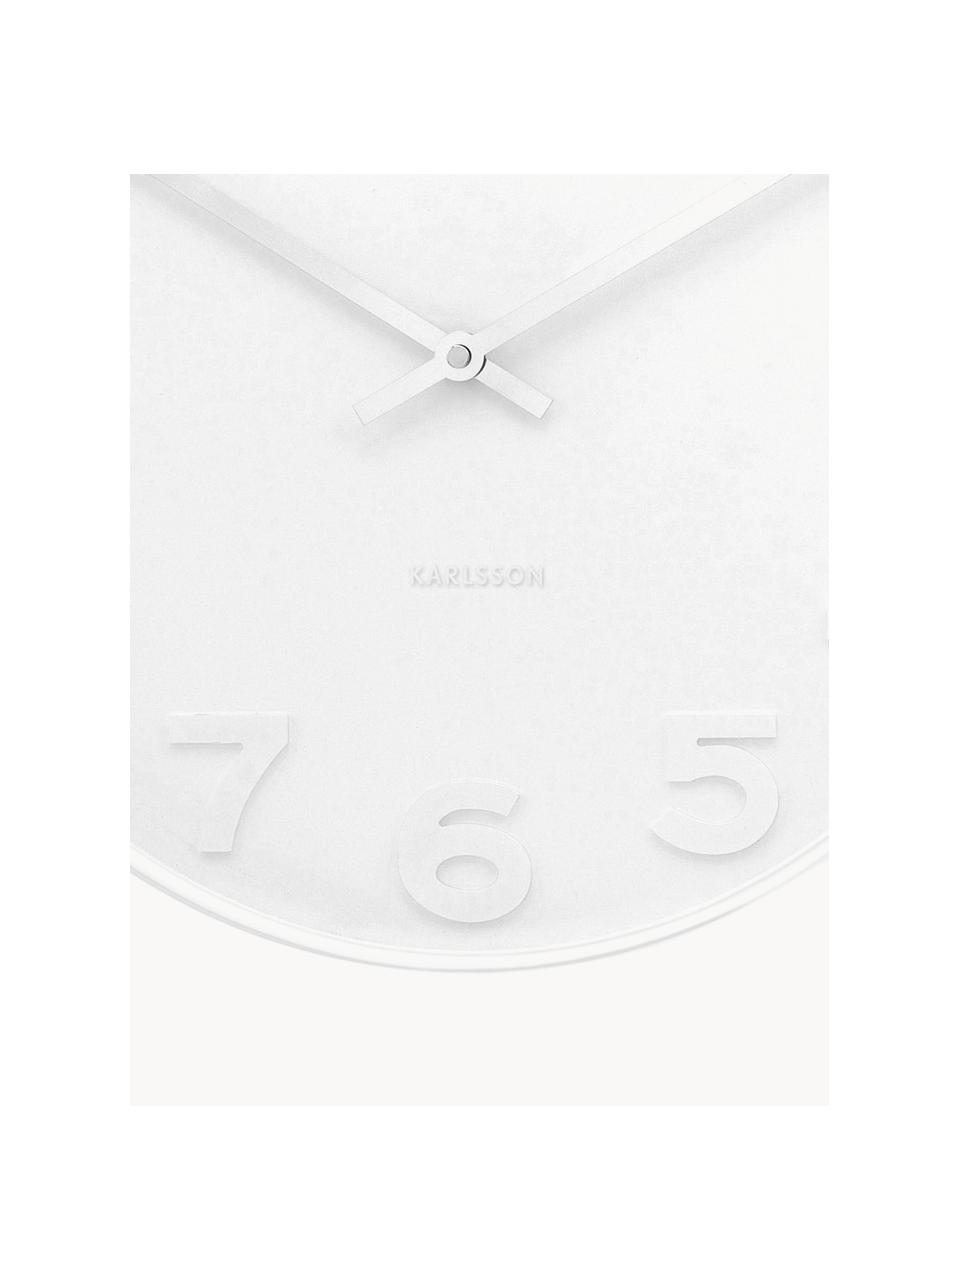 Nástěnné hodiny Mr. White, Bílá, stříbrná, Ø 38 cm